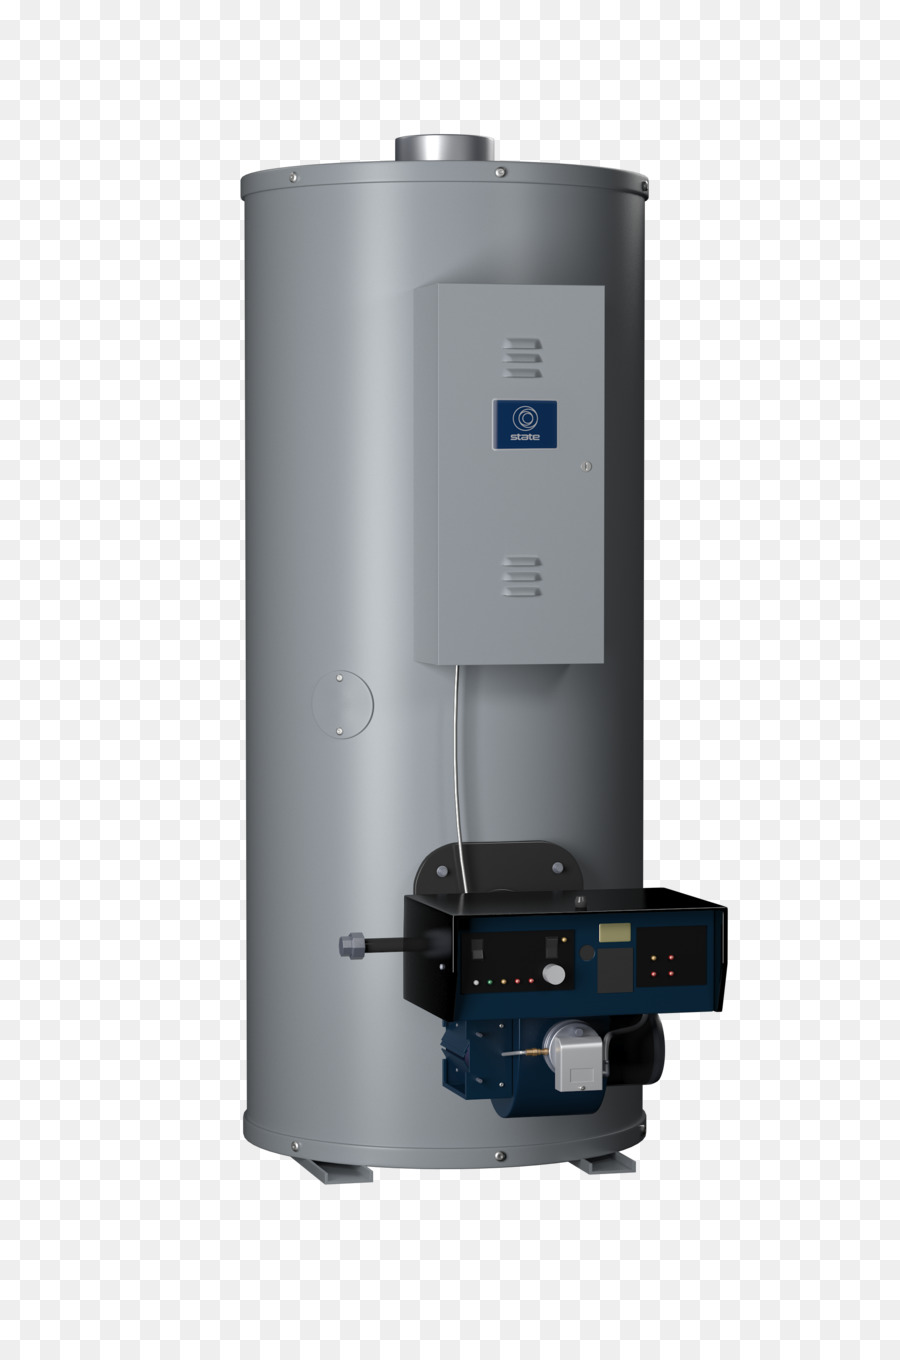 Calefacción De Agua，S Smith Agua De Los Productos De La Empresa PNG